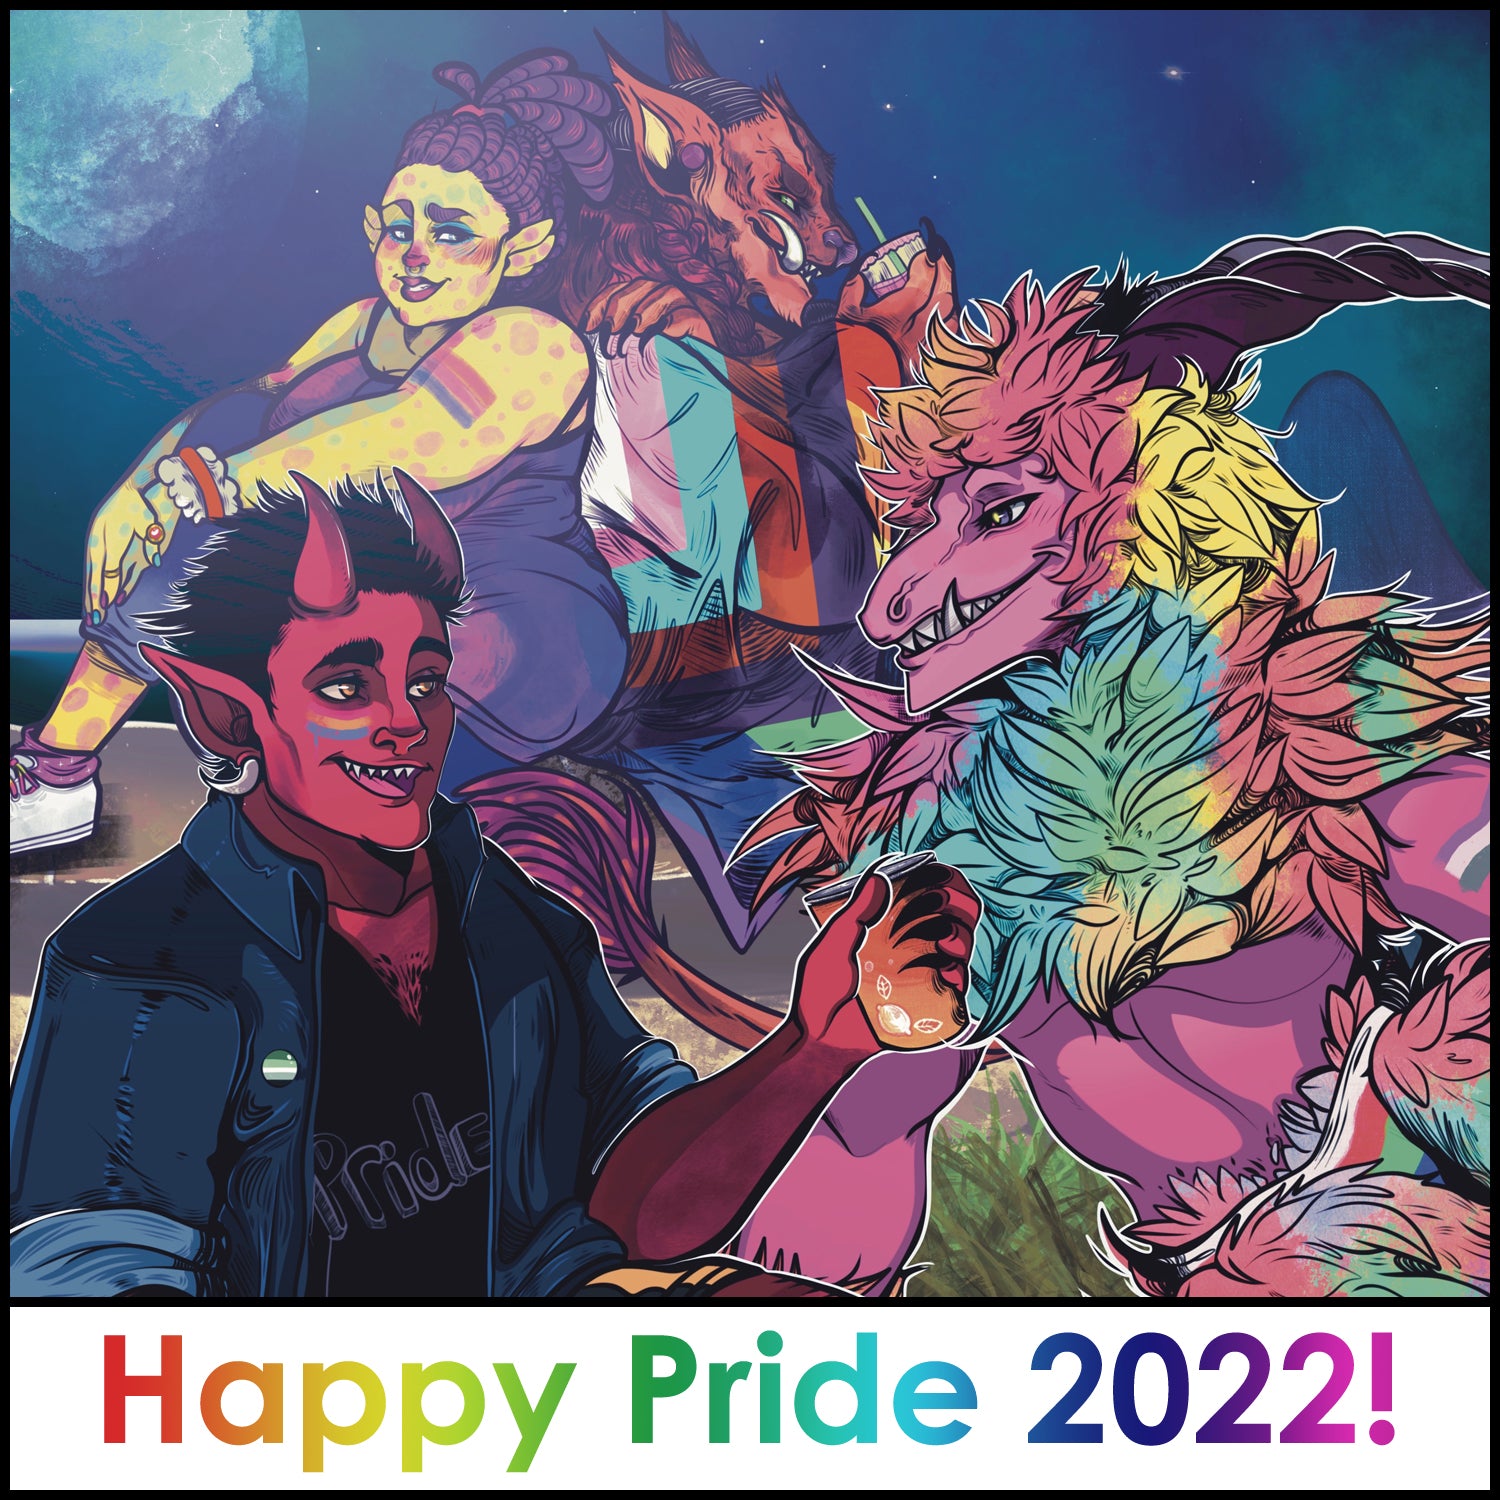 Happy Pride 2022!